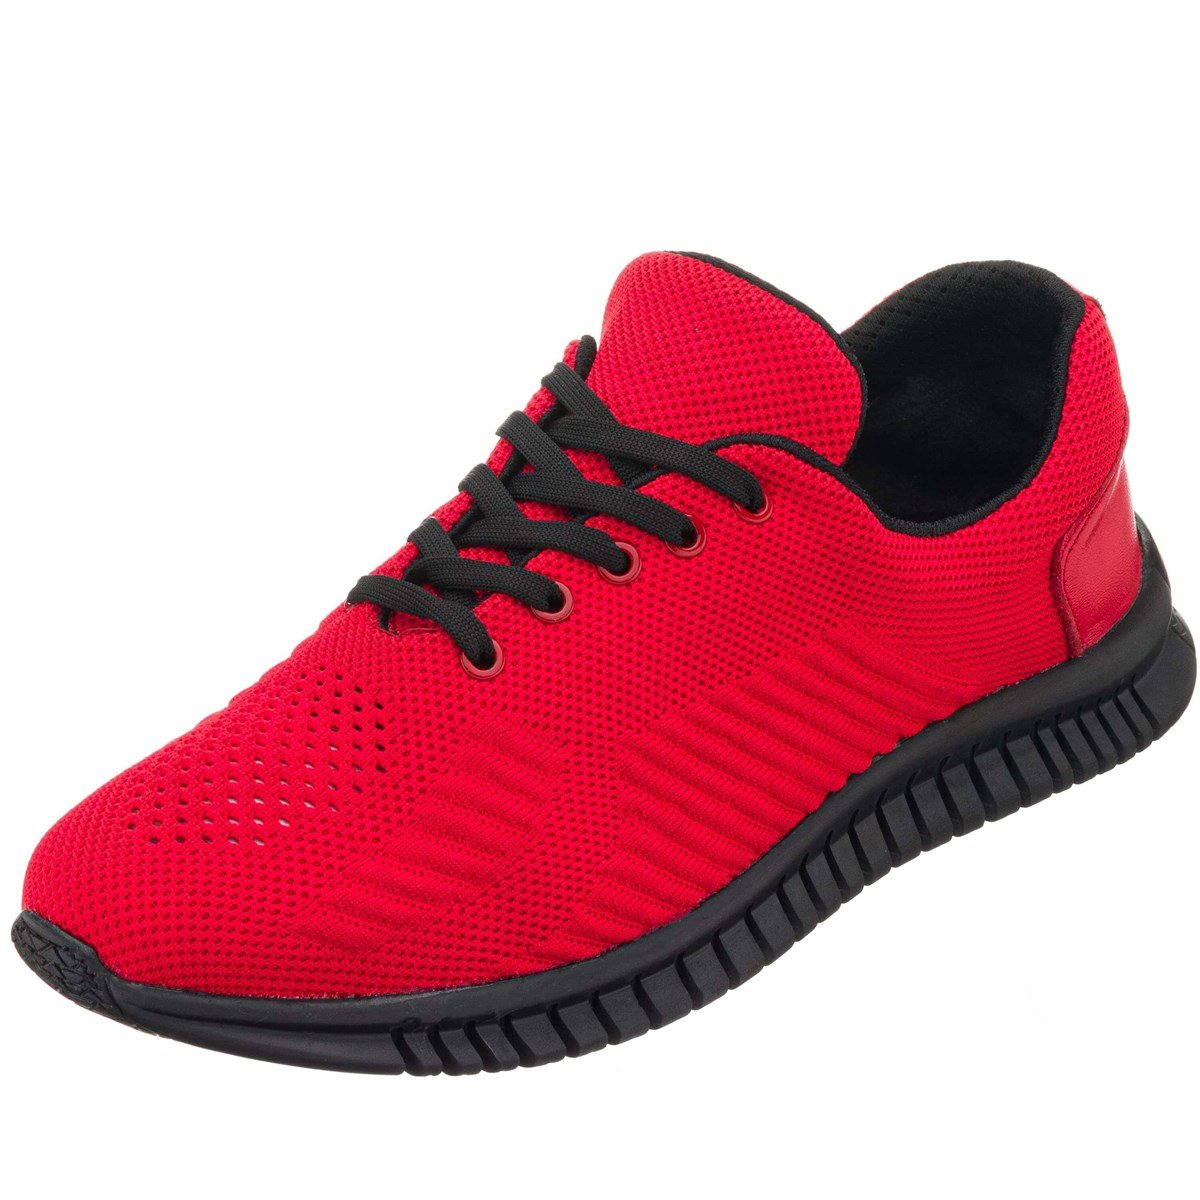 45,46,47,48,49,50 Numaralarda Kırmızı Kauçuk Taban Büyük Numara Erkek Spor  Ayakkabı